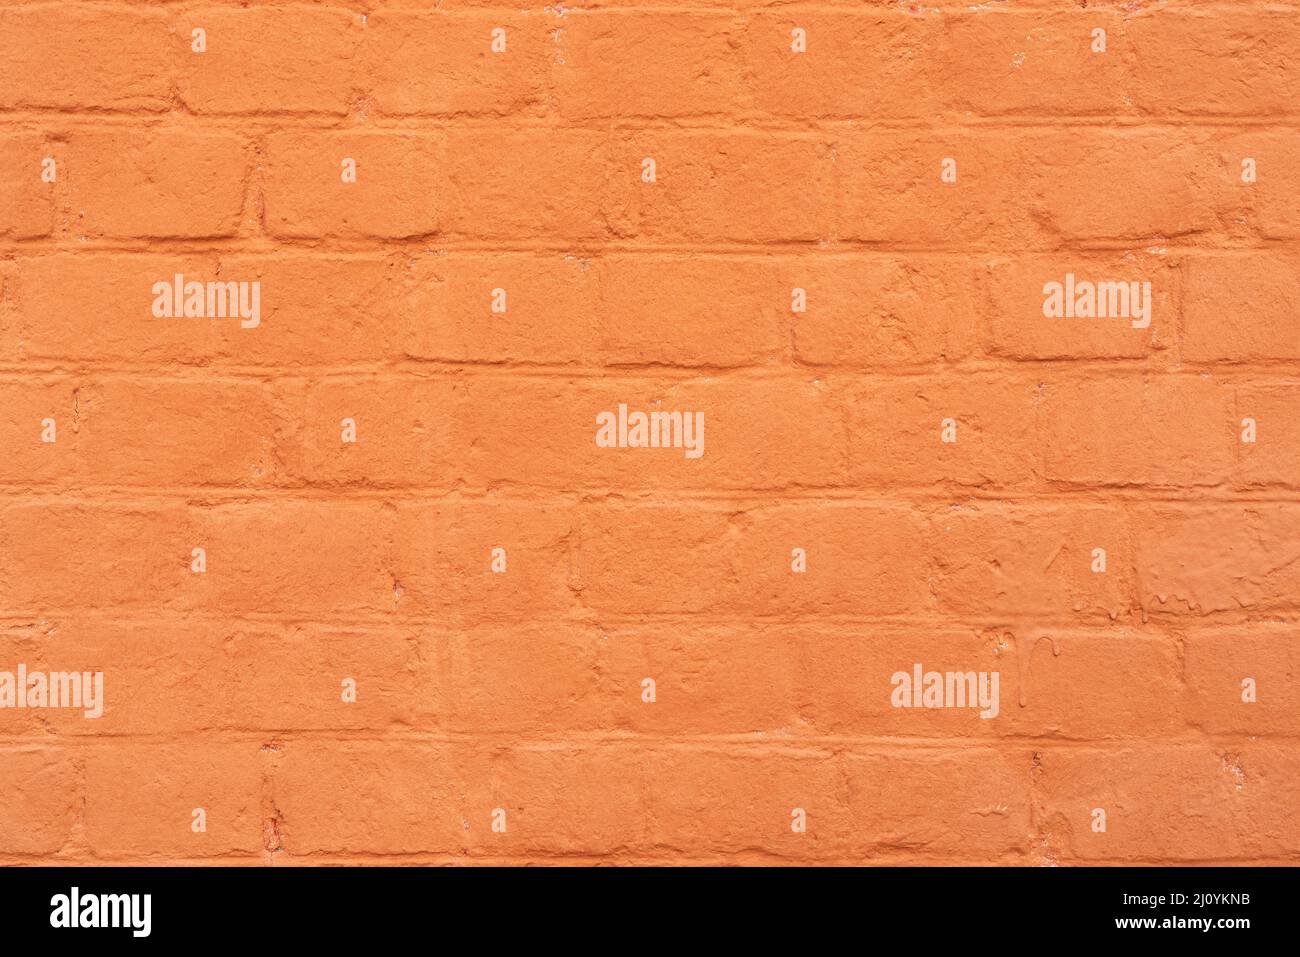 La parete in mattoni è dipinta con vernice arancione. Astratto sfondo architettonico. Foto Stock